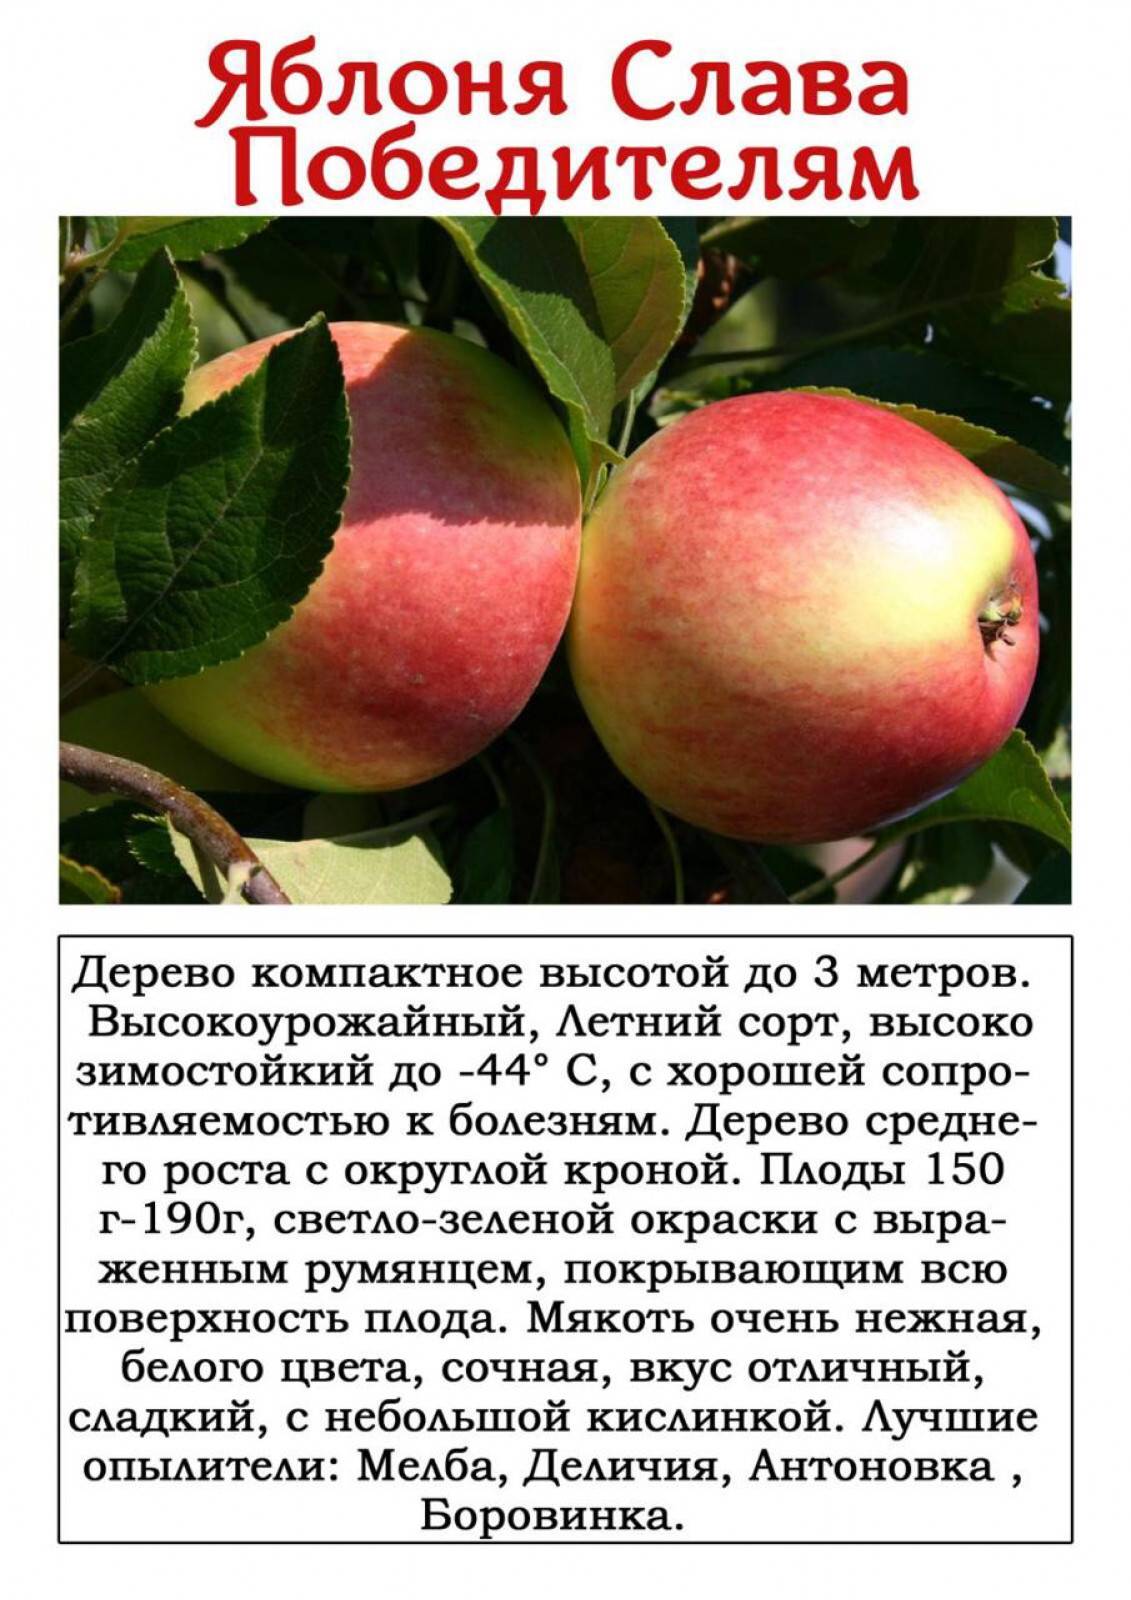 Описание сорта яблони здоровье: фото яблок, важные характеристики, урожайность с дерева